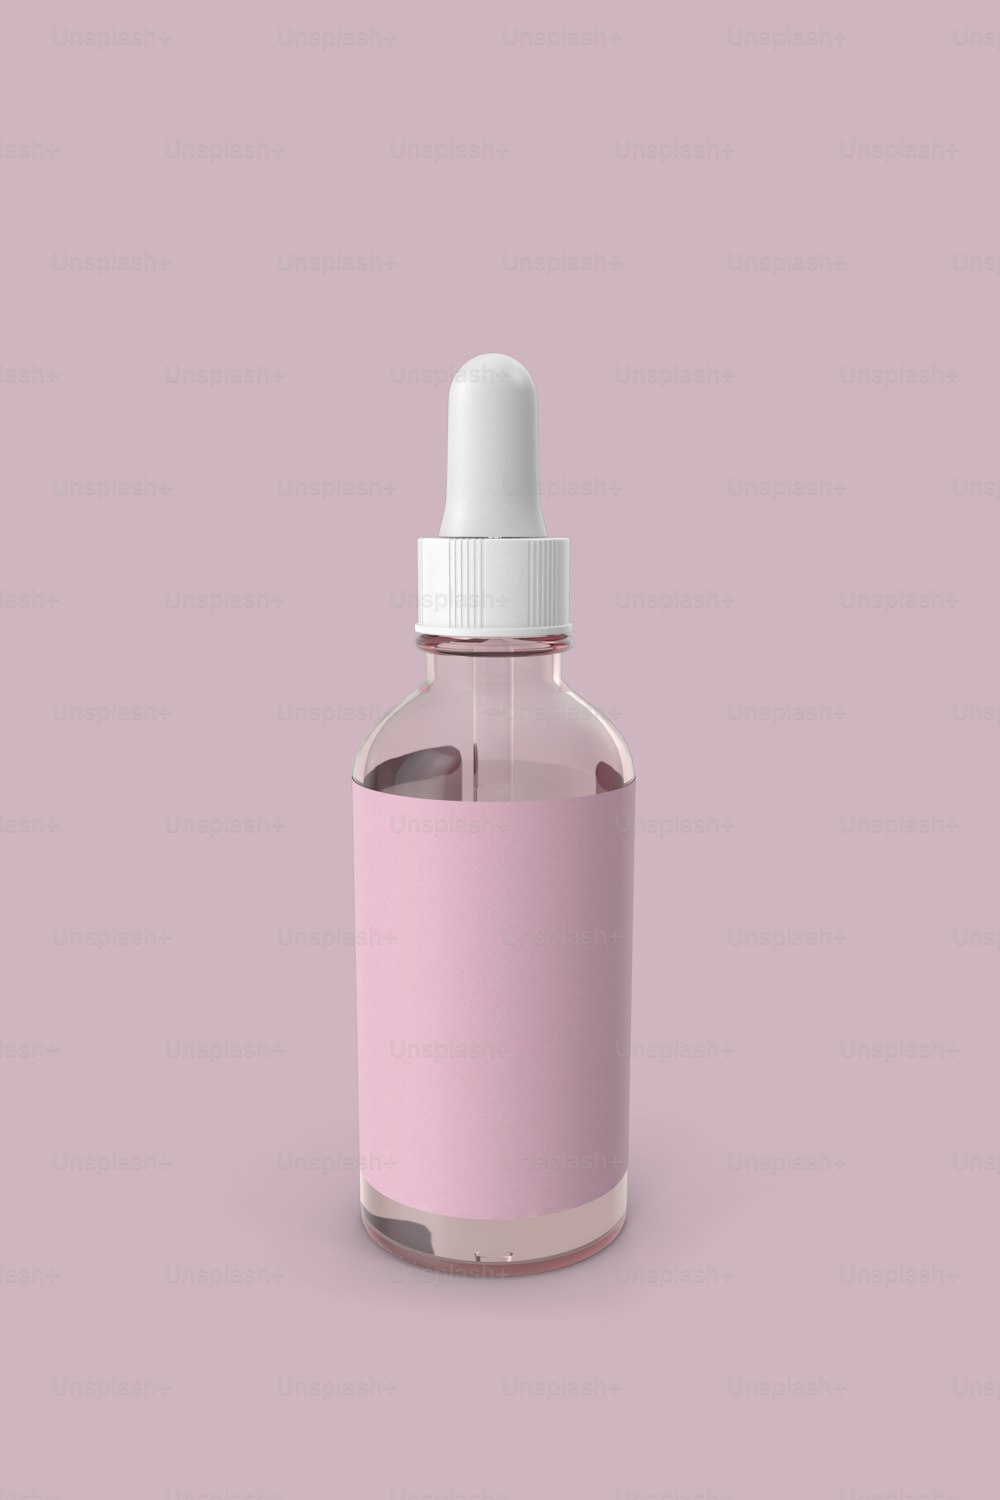 eine rosafarbene Flasche mit weißem Verschluss auf rosafarbenem Hintergrund